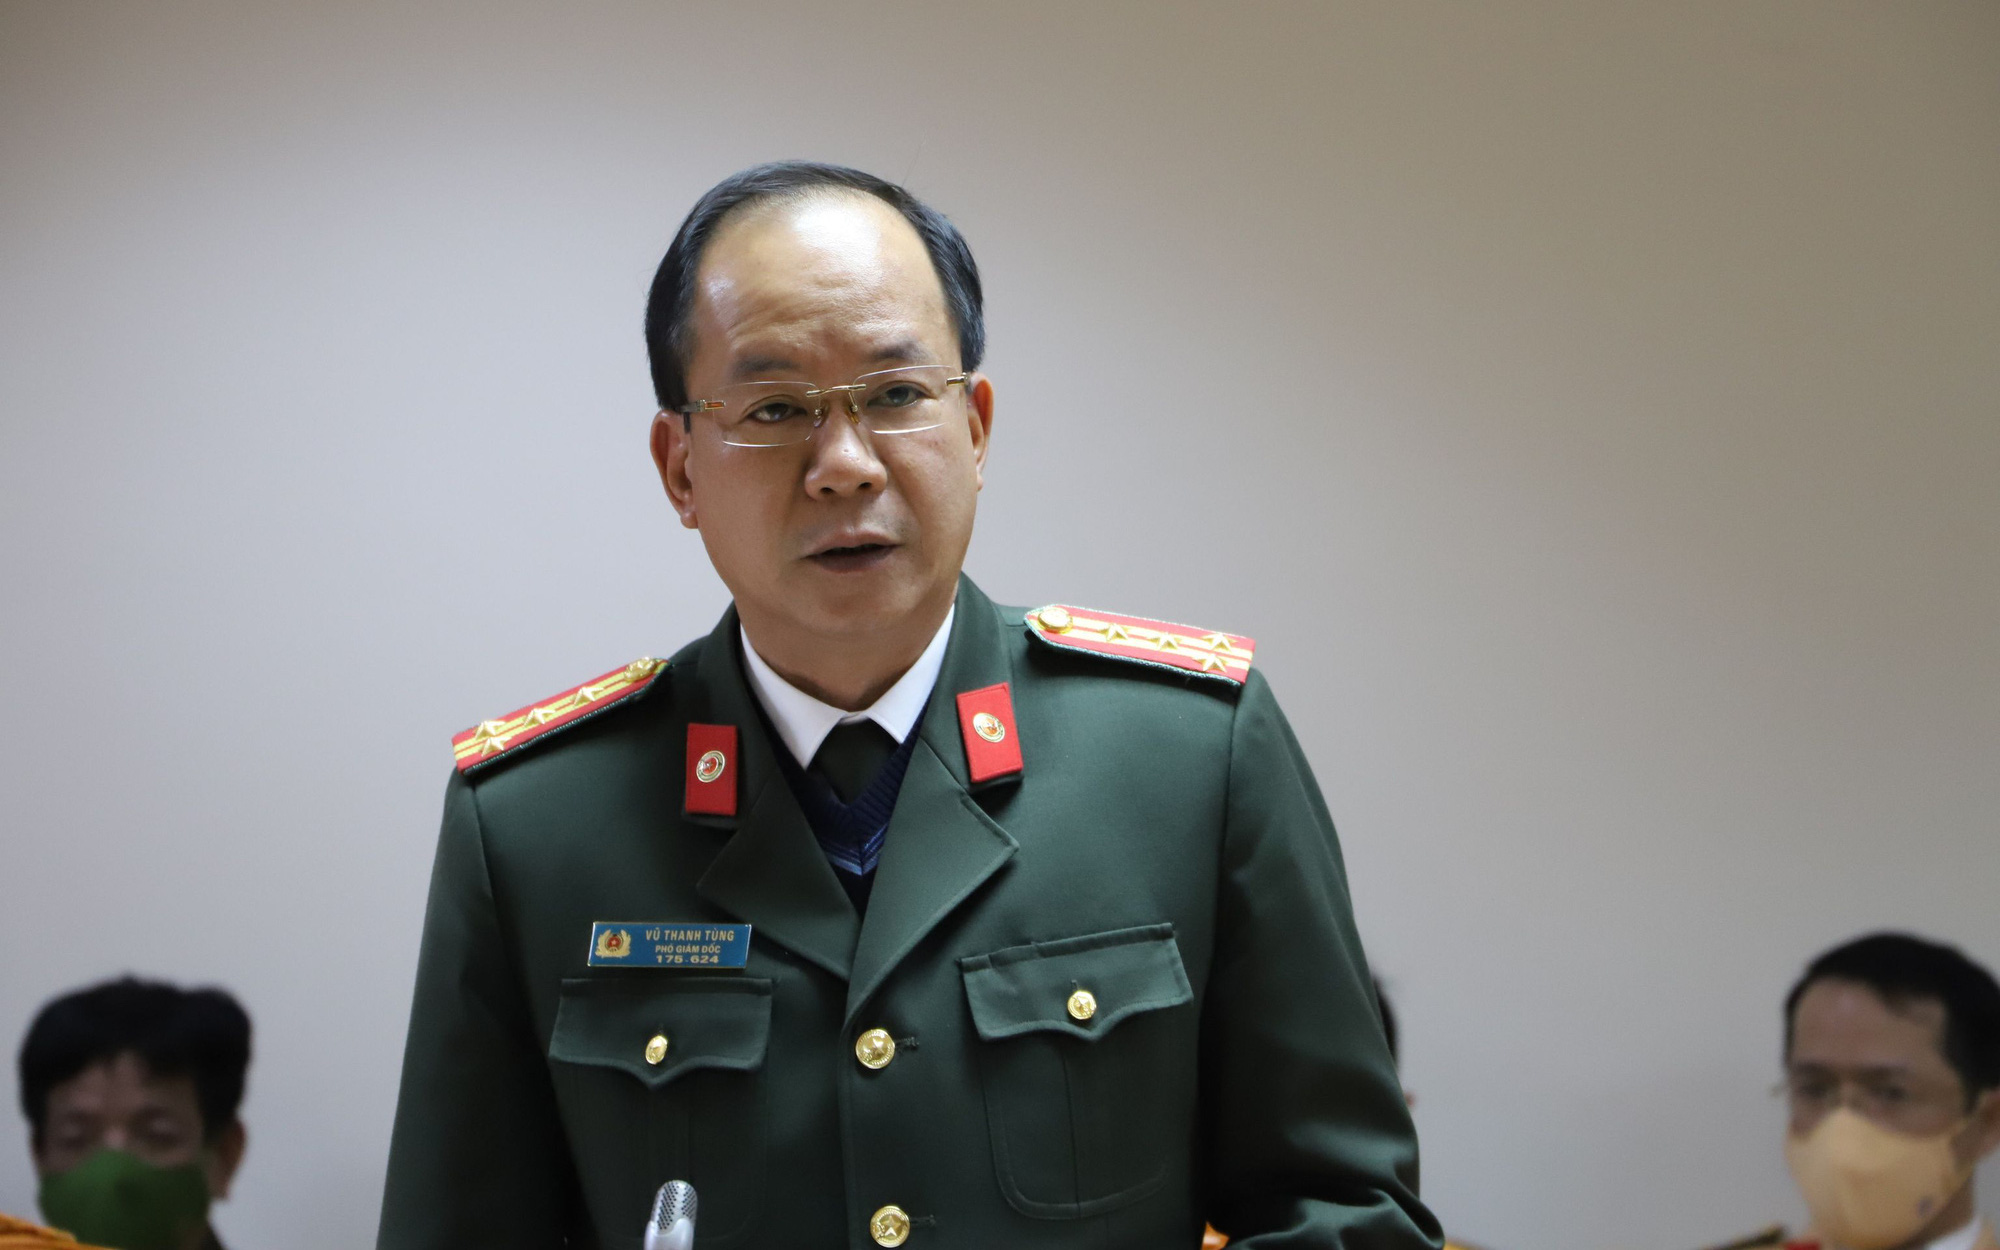 Vụ cựu bí thư huyện ở Quảng Ninh bị tố hiếp dâm cấp dưới: Có căn cứ xác định việc giao cấu với thuộc cấp